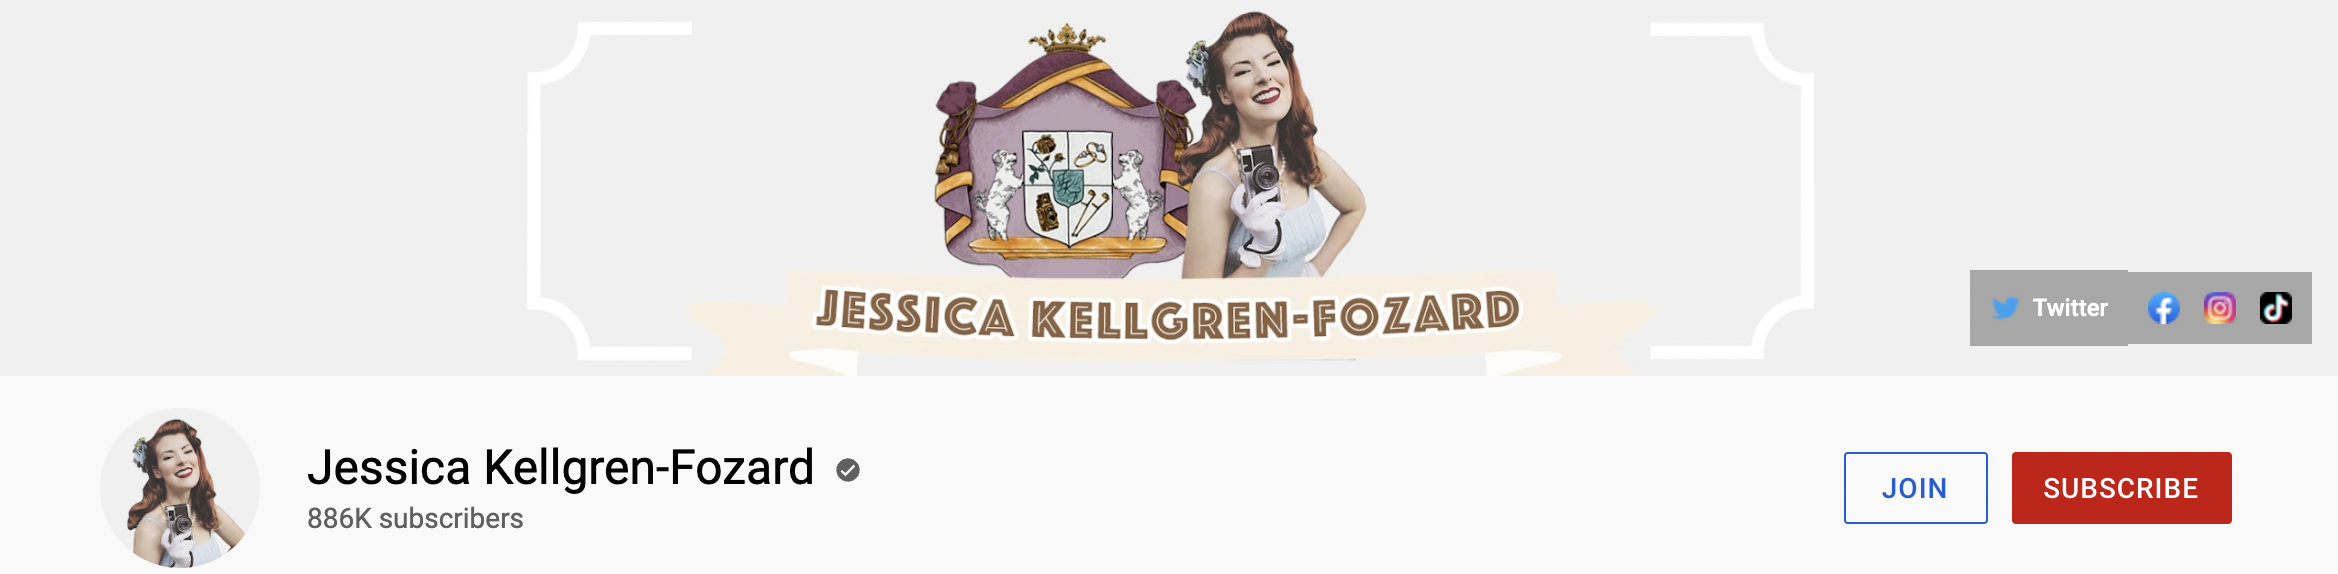 Jessica Kellgren-Fozard Youtube channel